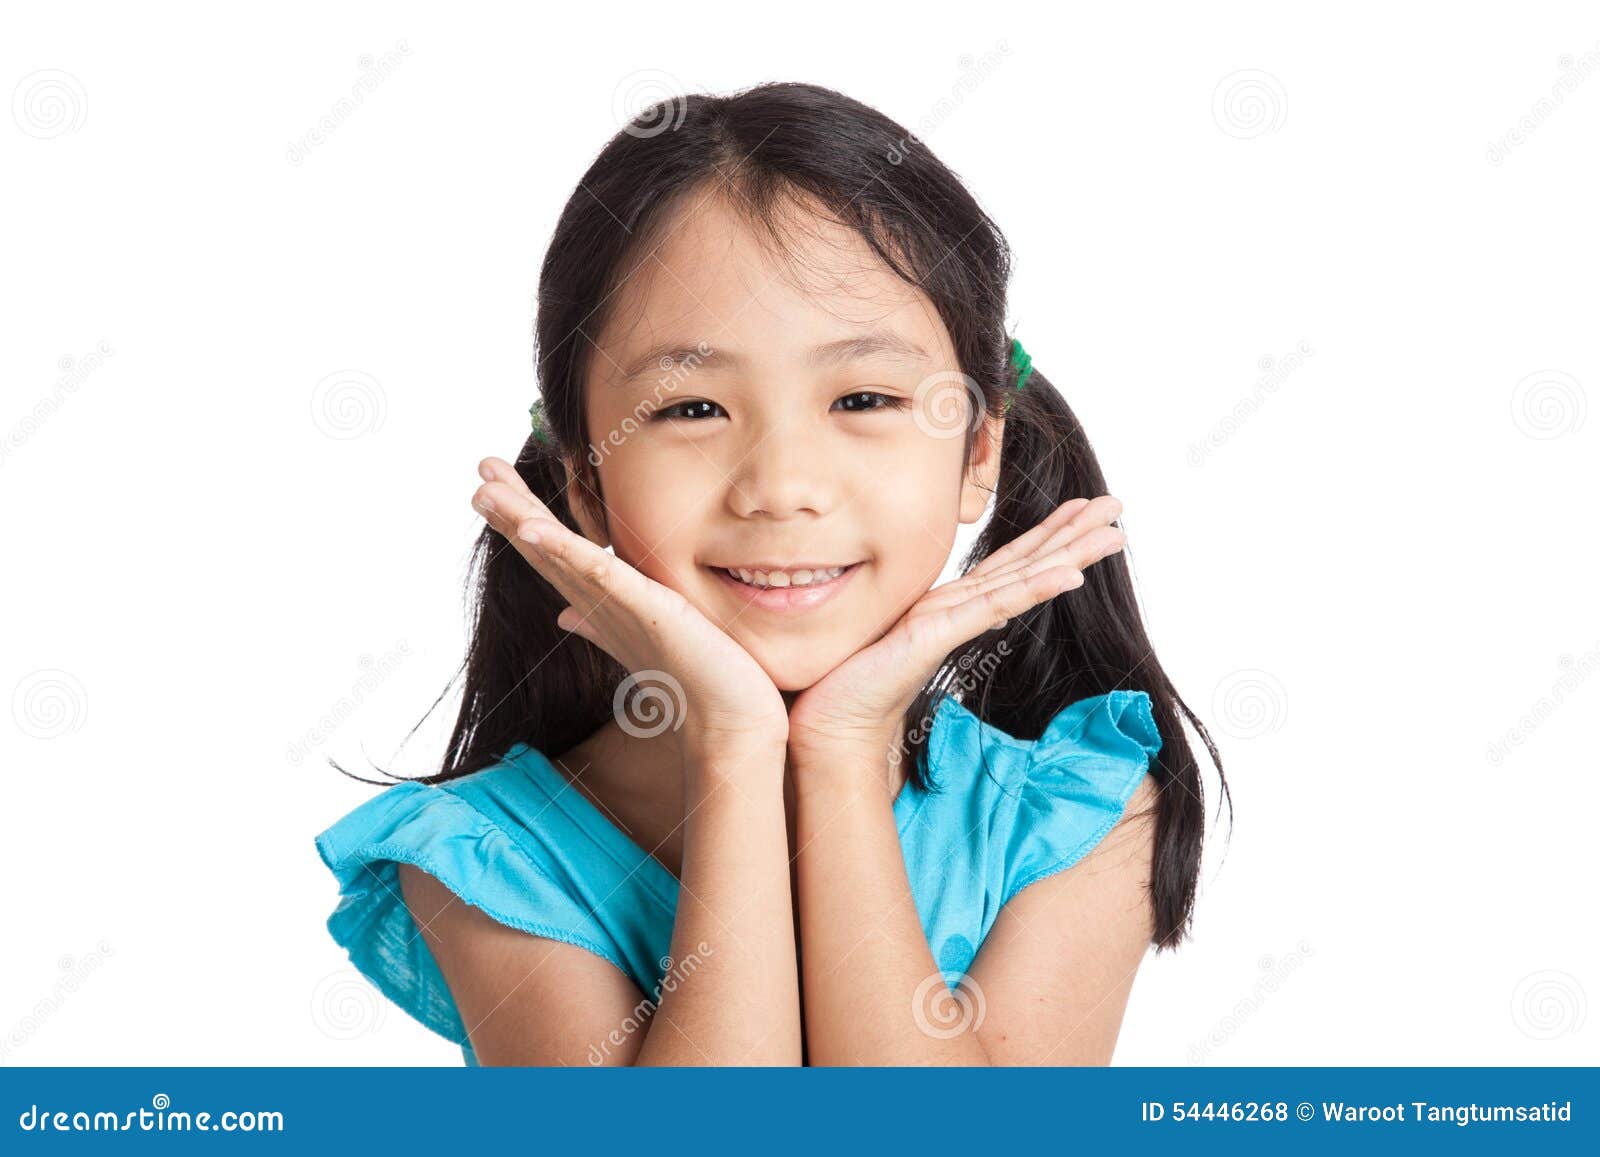 Little asia. Азиатская девочка улыбается. Улыбка азиатки на белом фоне. Азиатская девочка маленькая улыбается. Улыбчивые азиаты маленькая девочка.